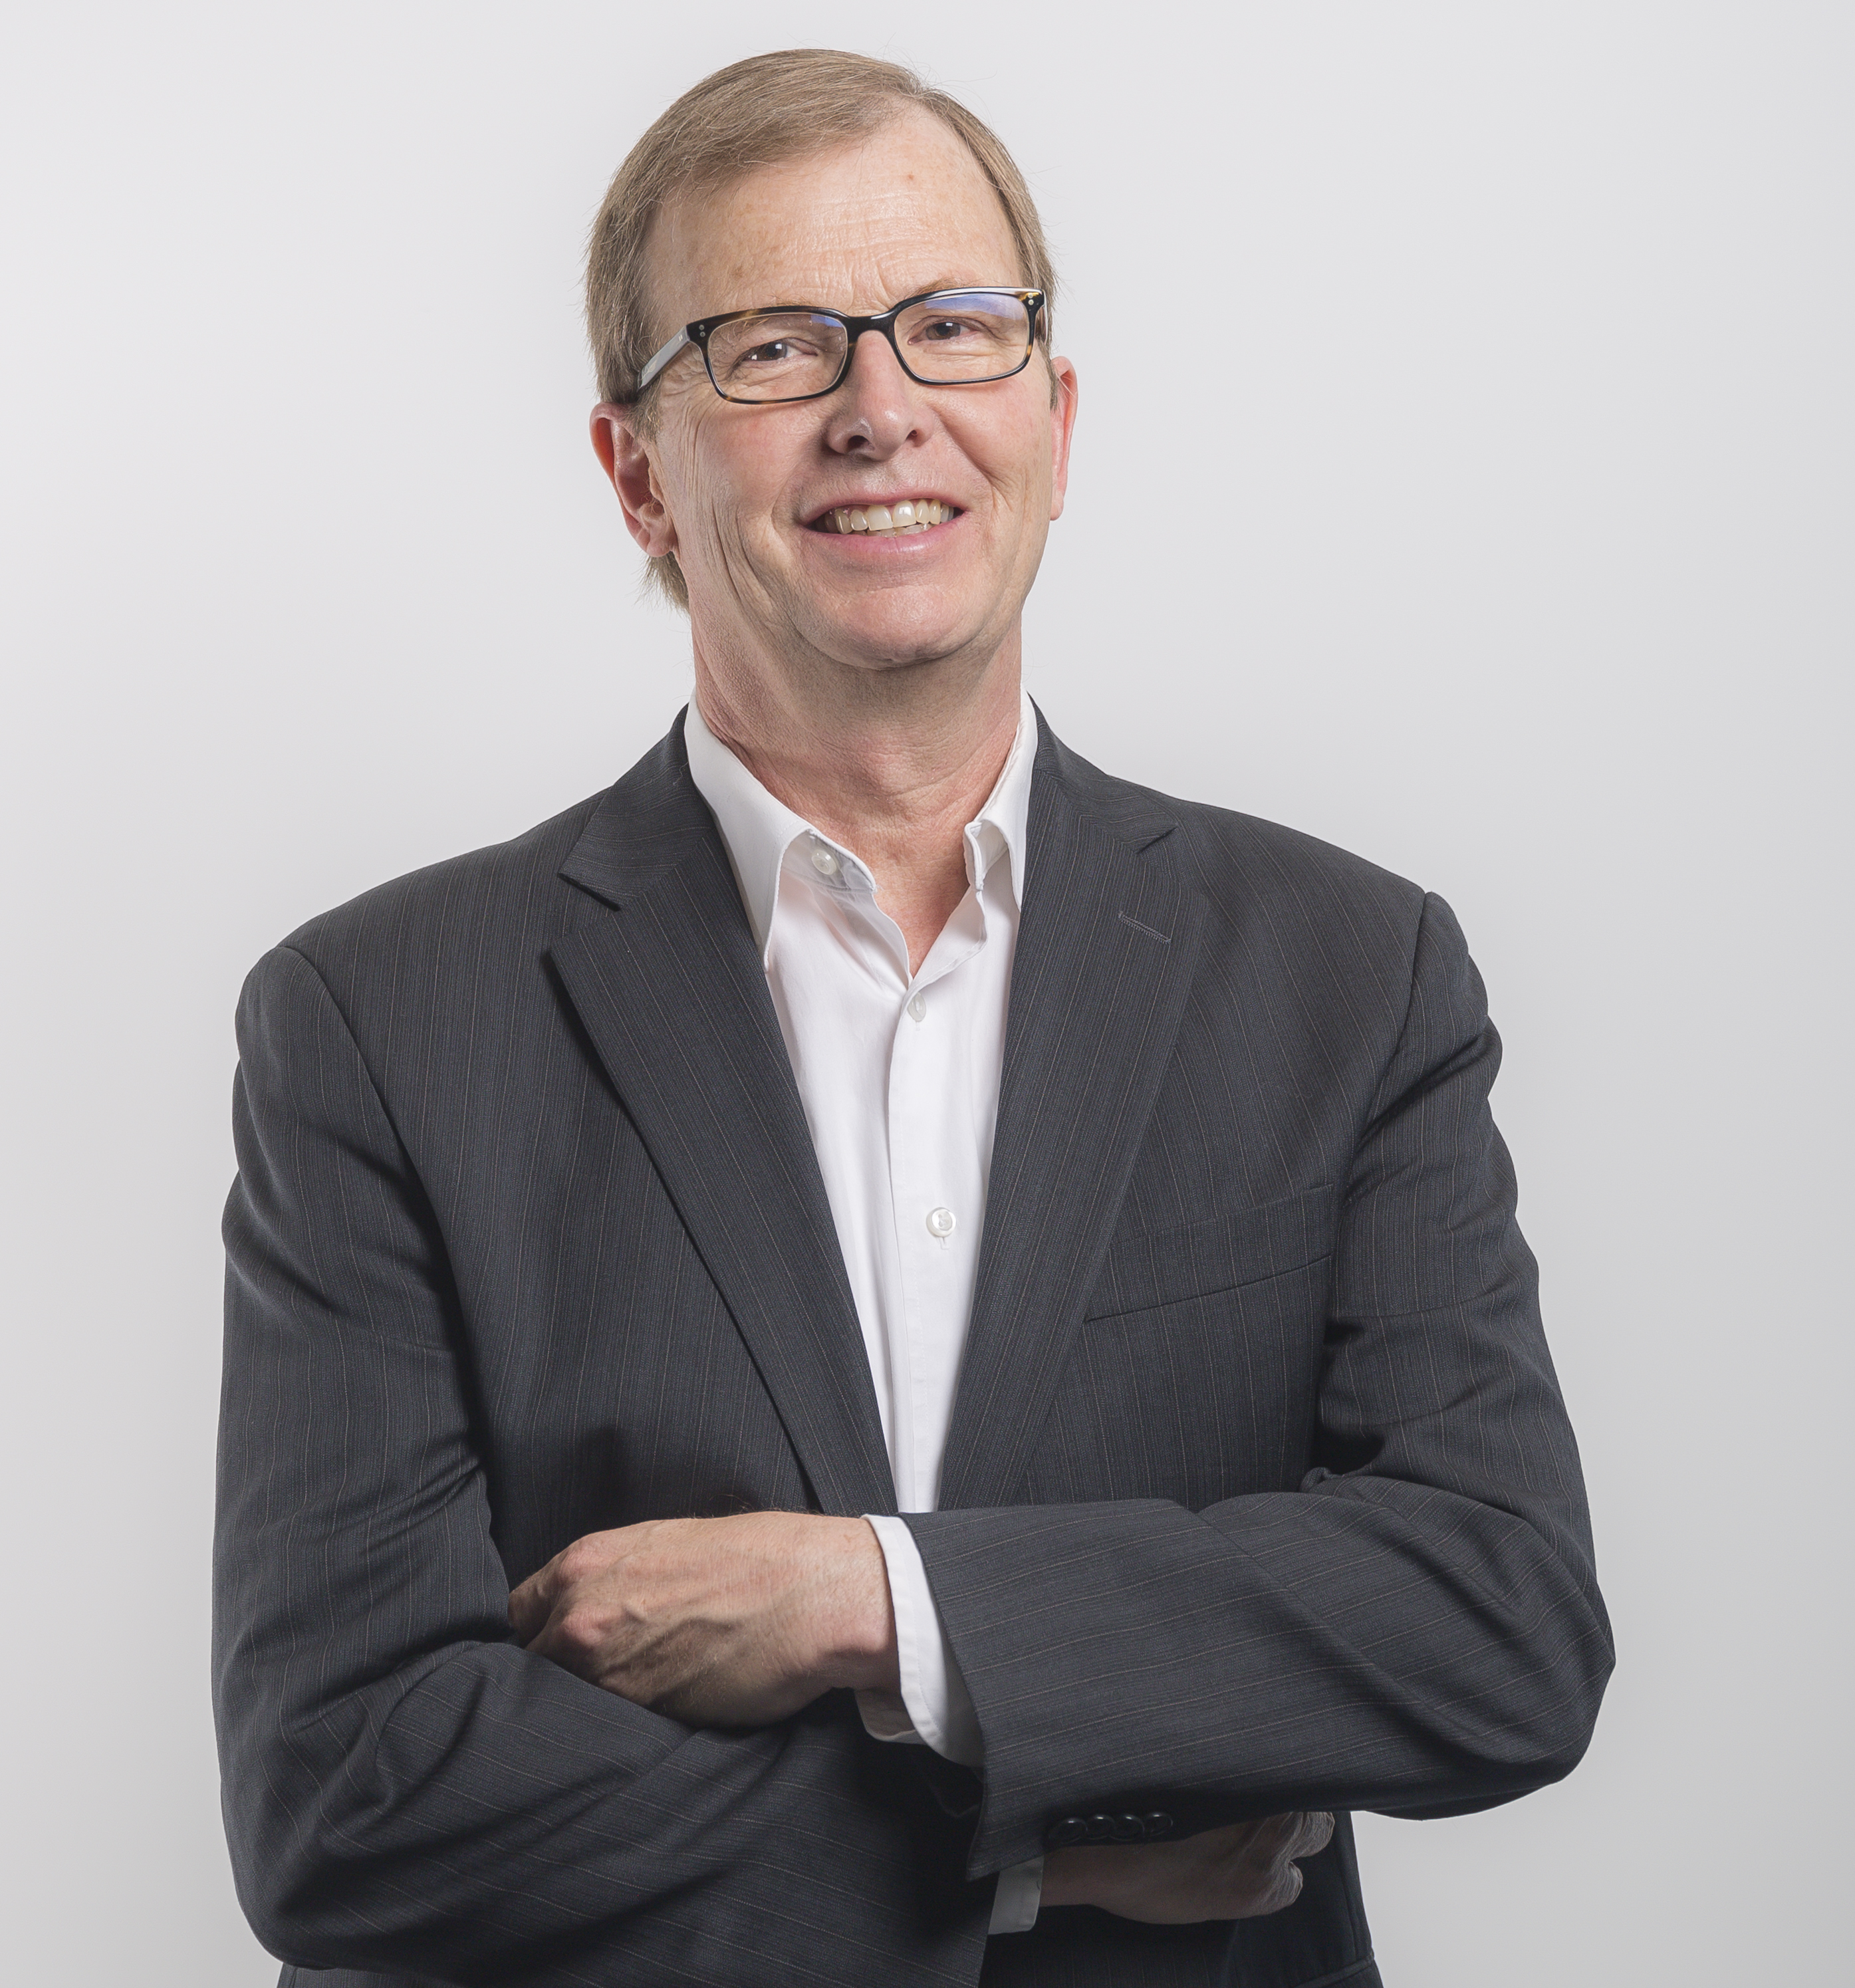 David Morley - CEO of UNICEF Canada